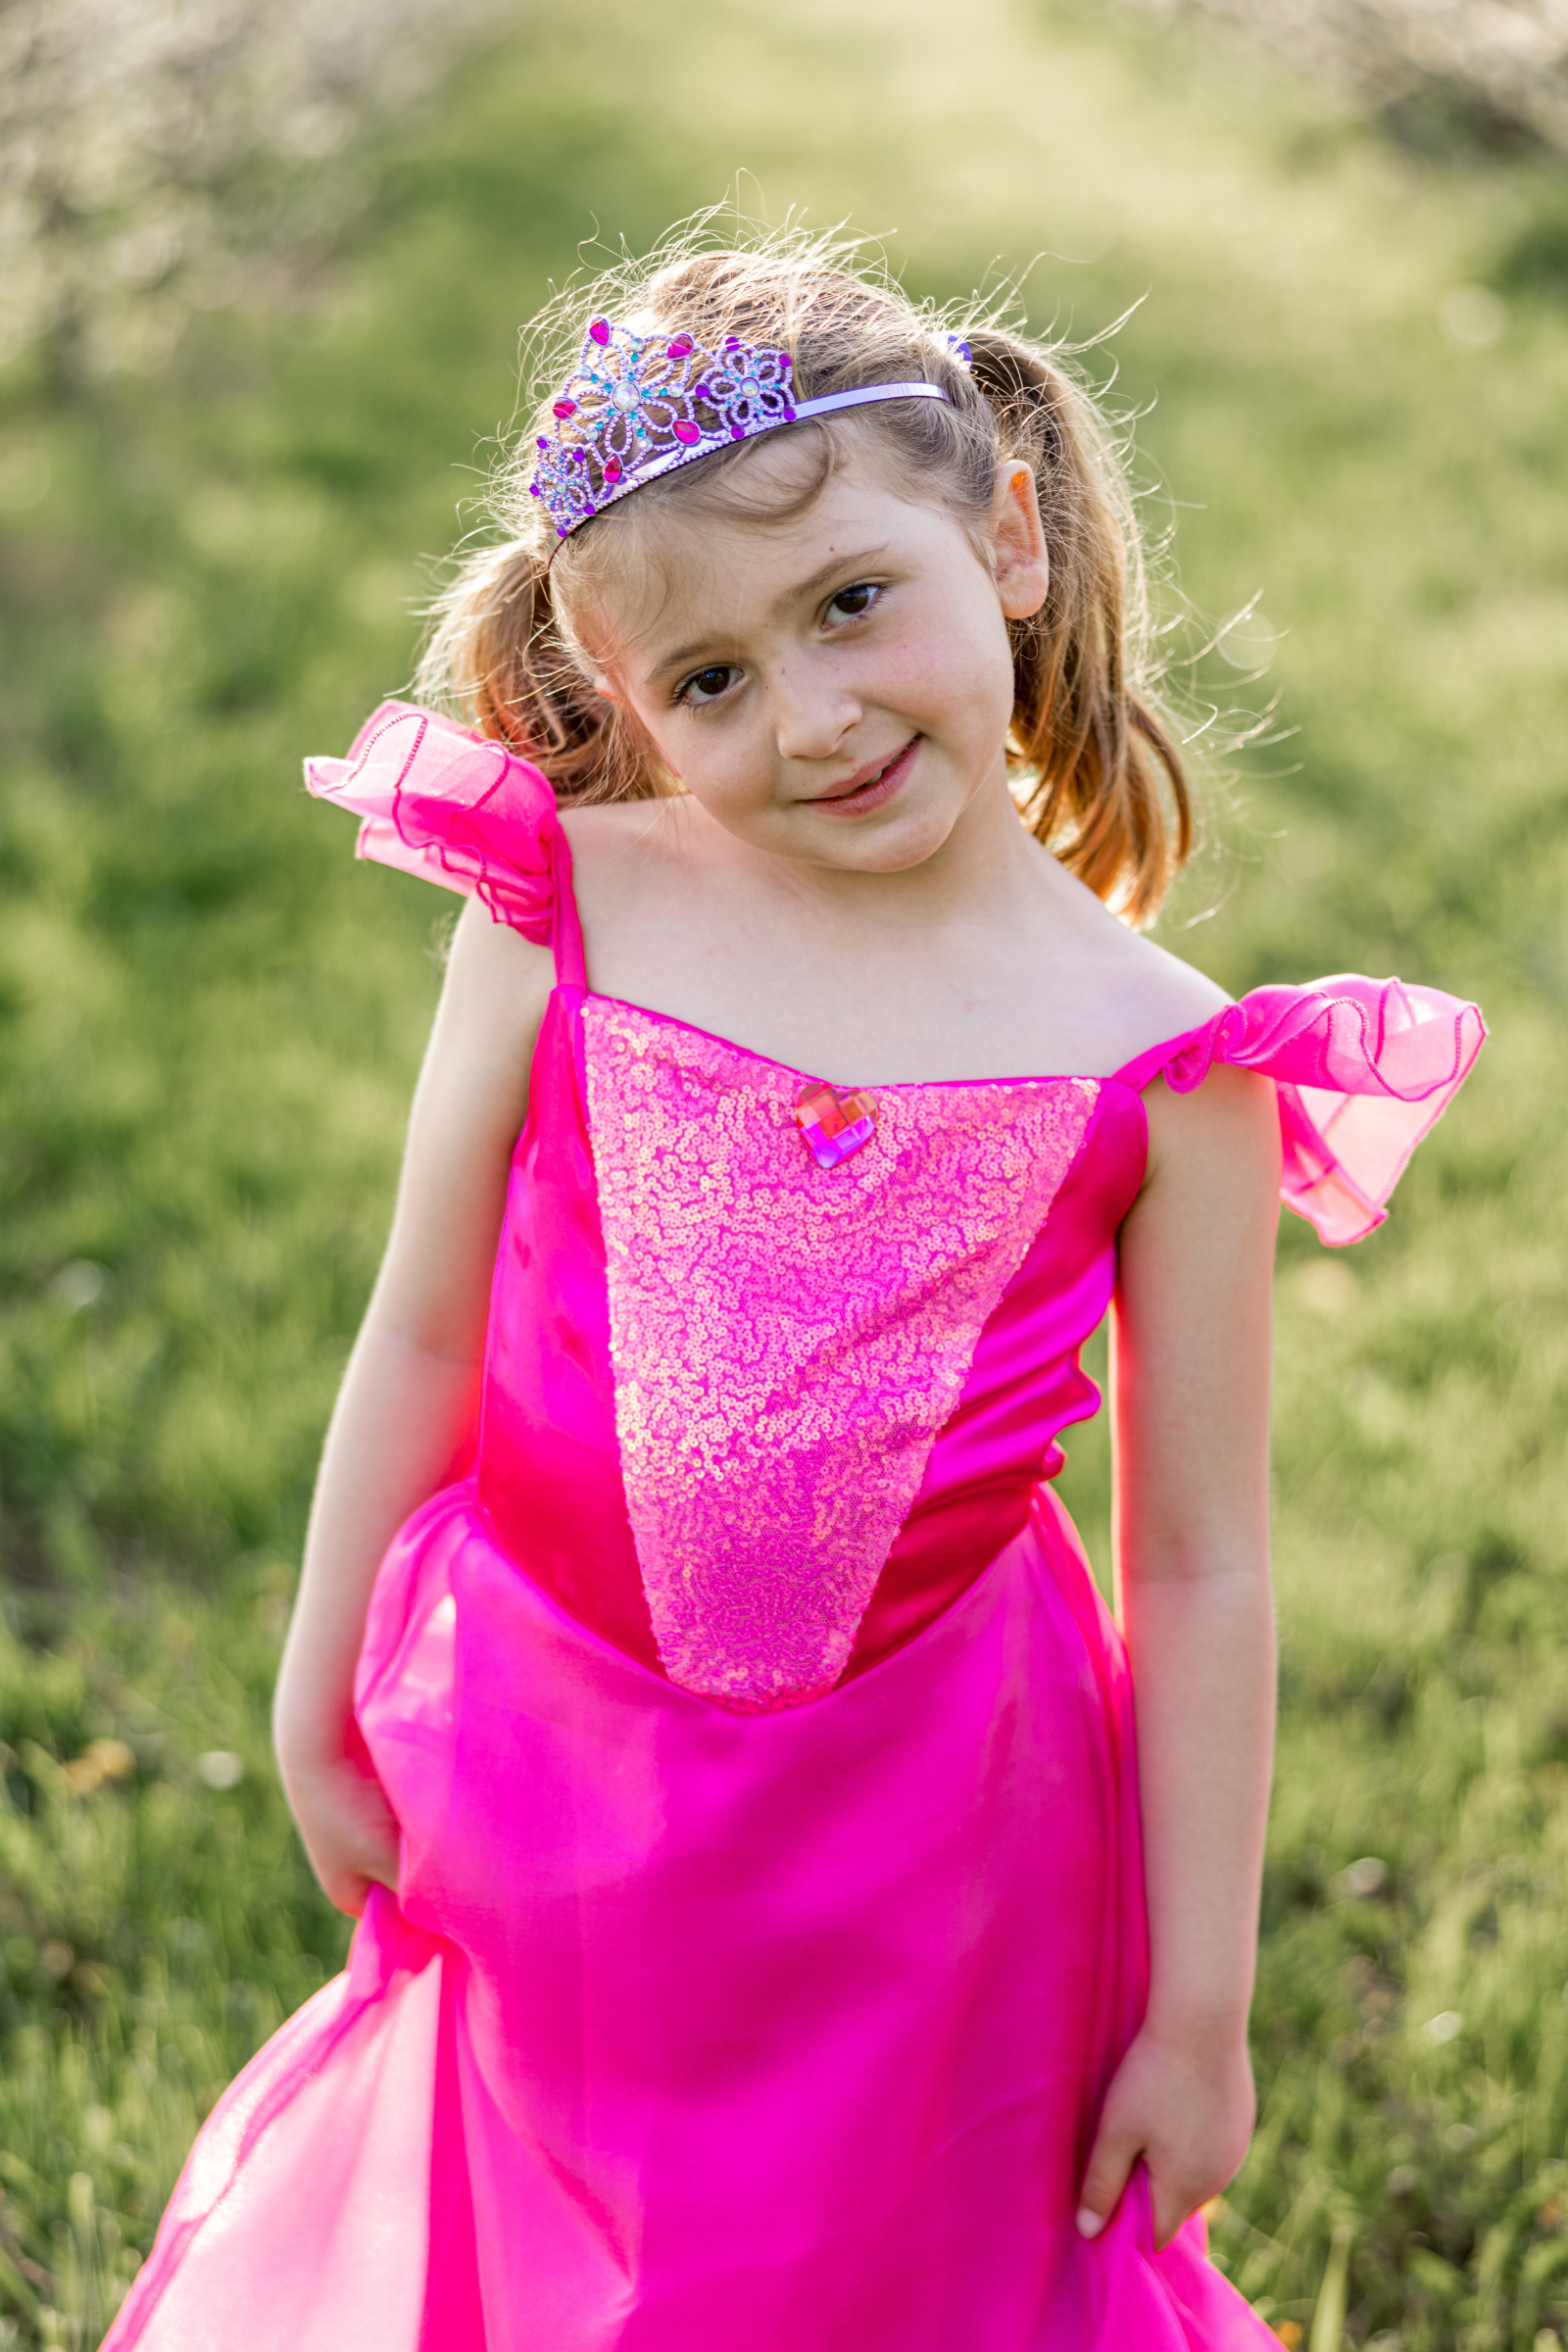 Hot Pink Party Princess Dress